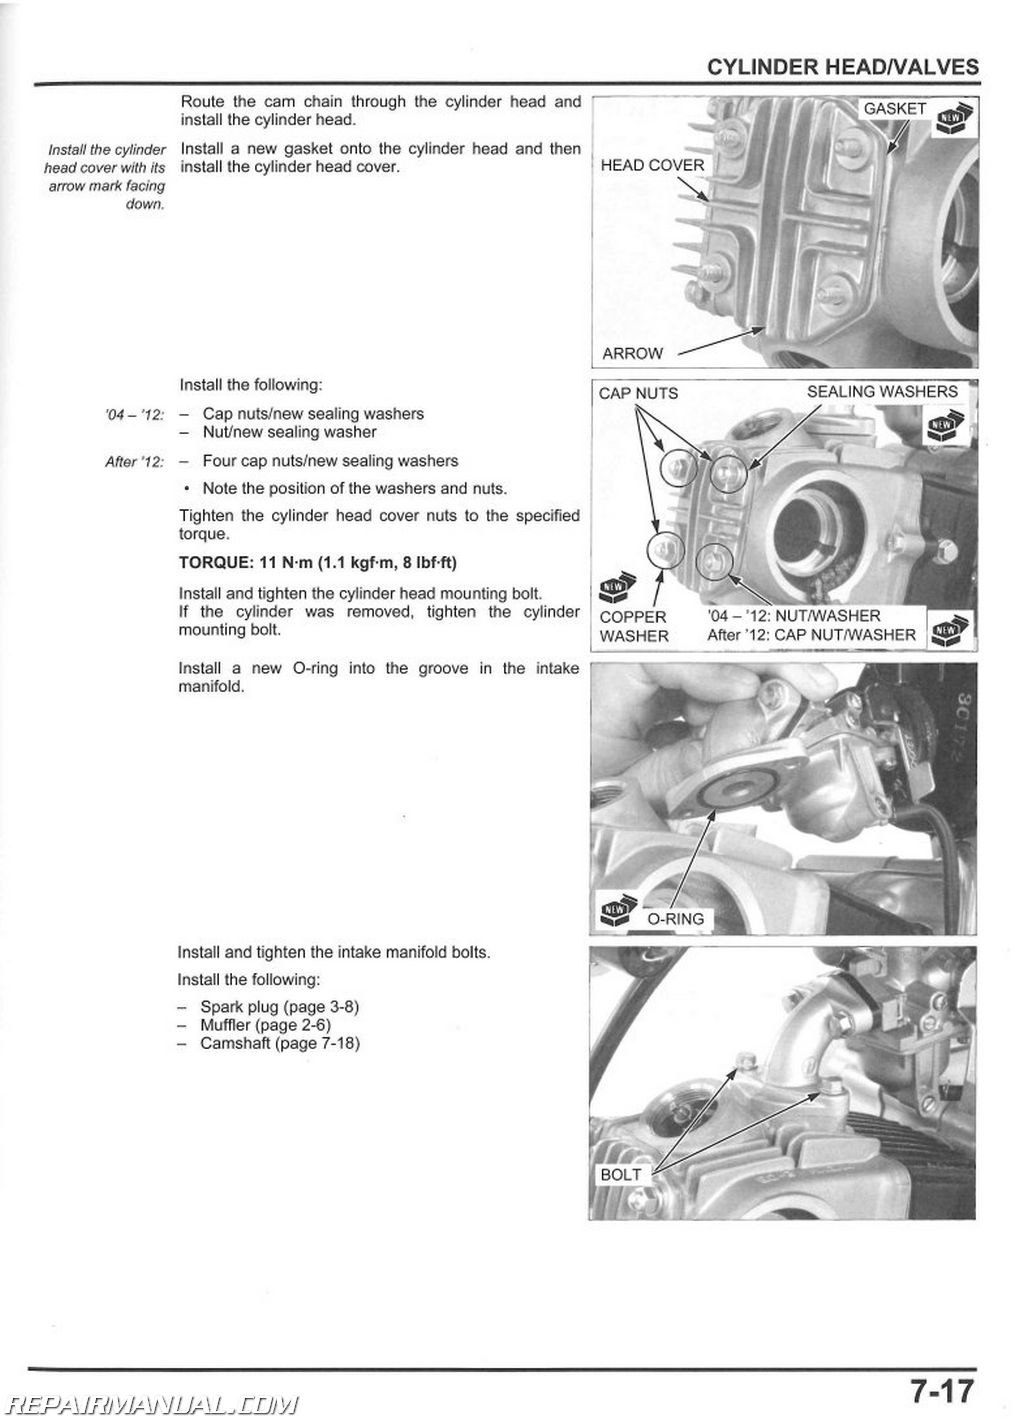 2011 Honda Crf50 Service Manual